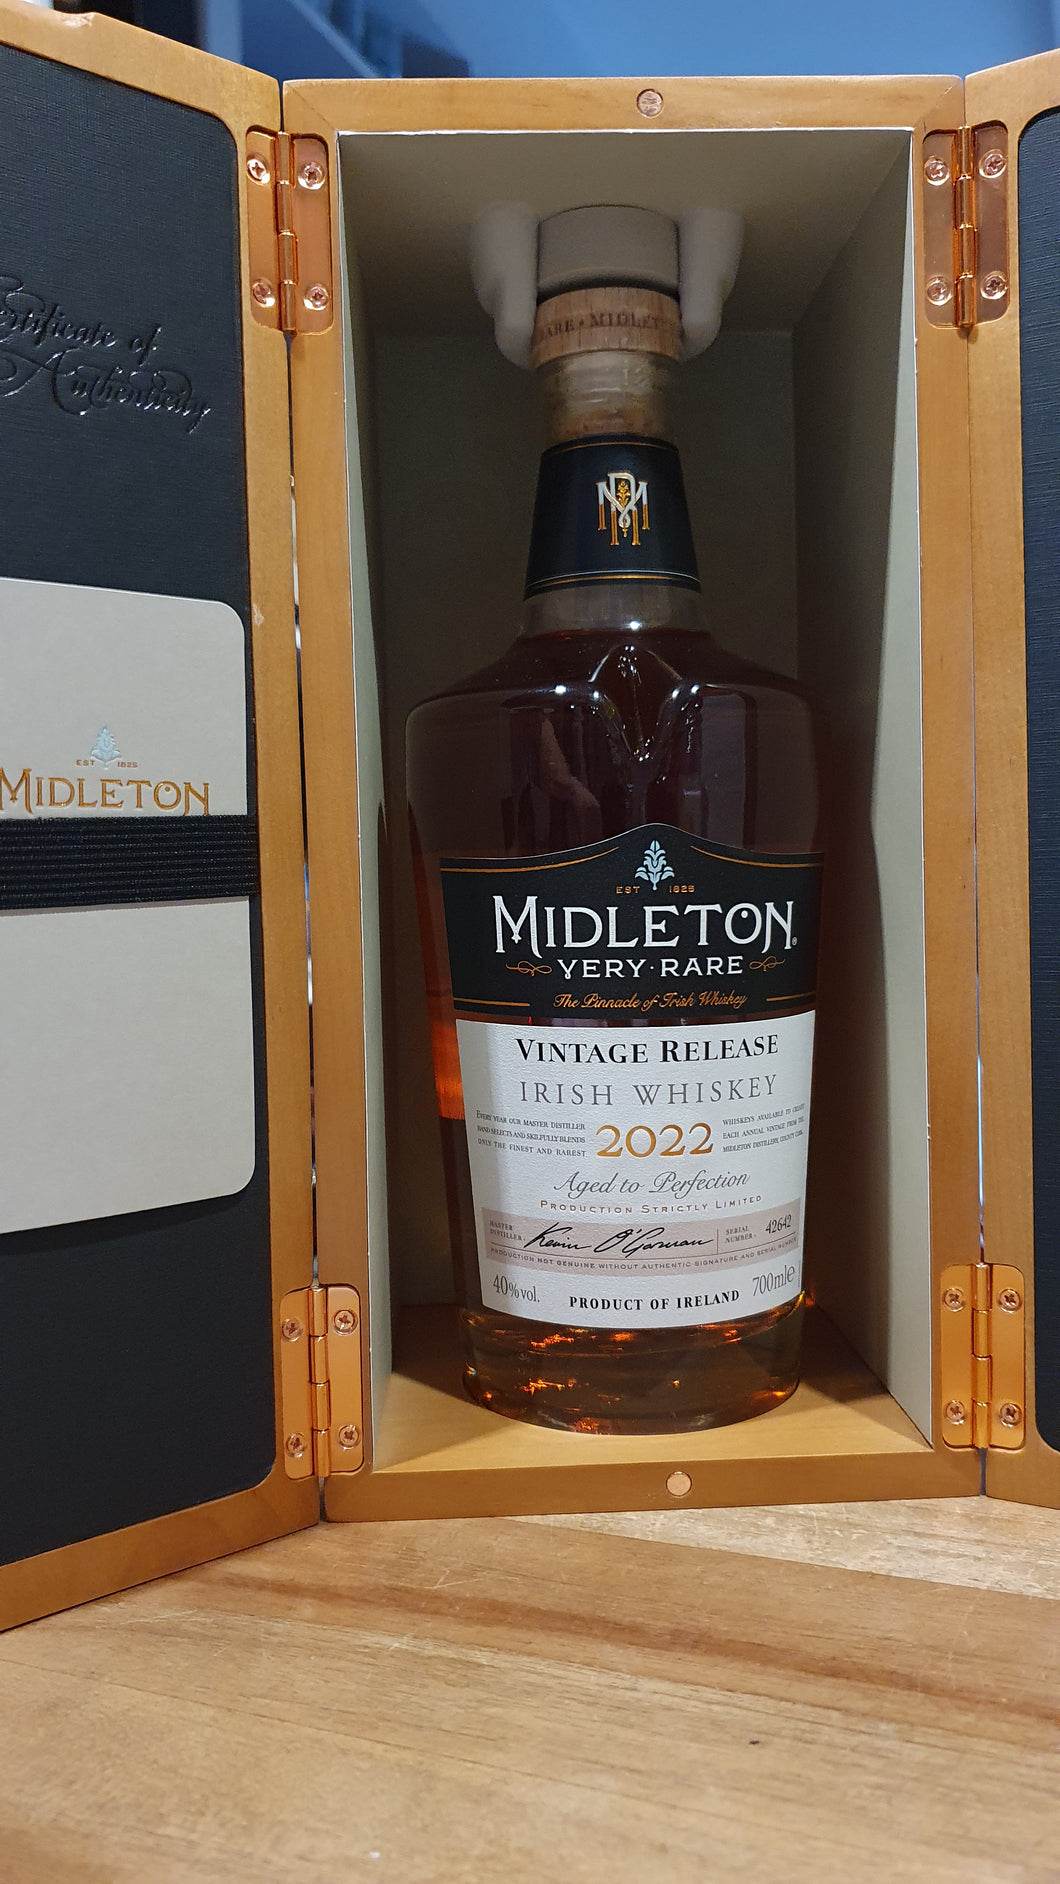 Midleton Very Rare Irish Whiskey  Vintage 2022 0,7l 40% vol. Irish Whiskey

es werden hierfür jedes Jahr die besten Single Pot Still und Grain Whiskeys der Midleton Distillerie verwendet, alle werden gelagert in leicht angekohlten amerikanischen Bourbon-Fässern


